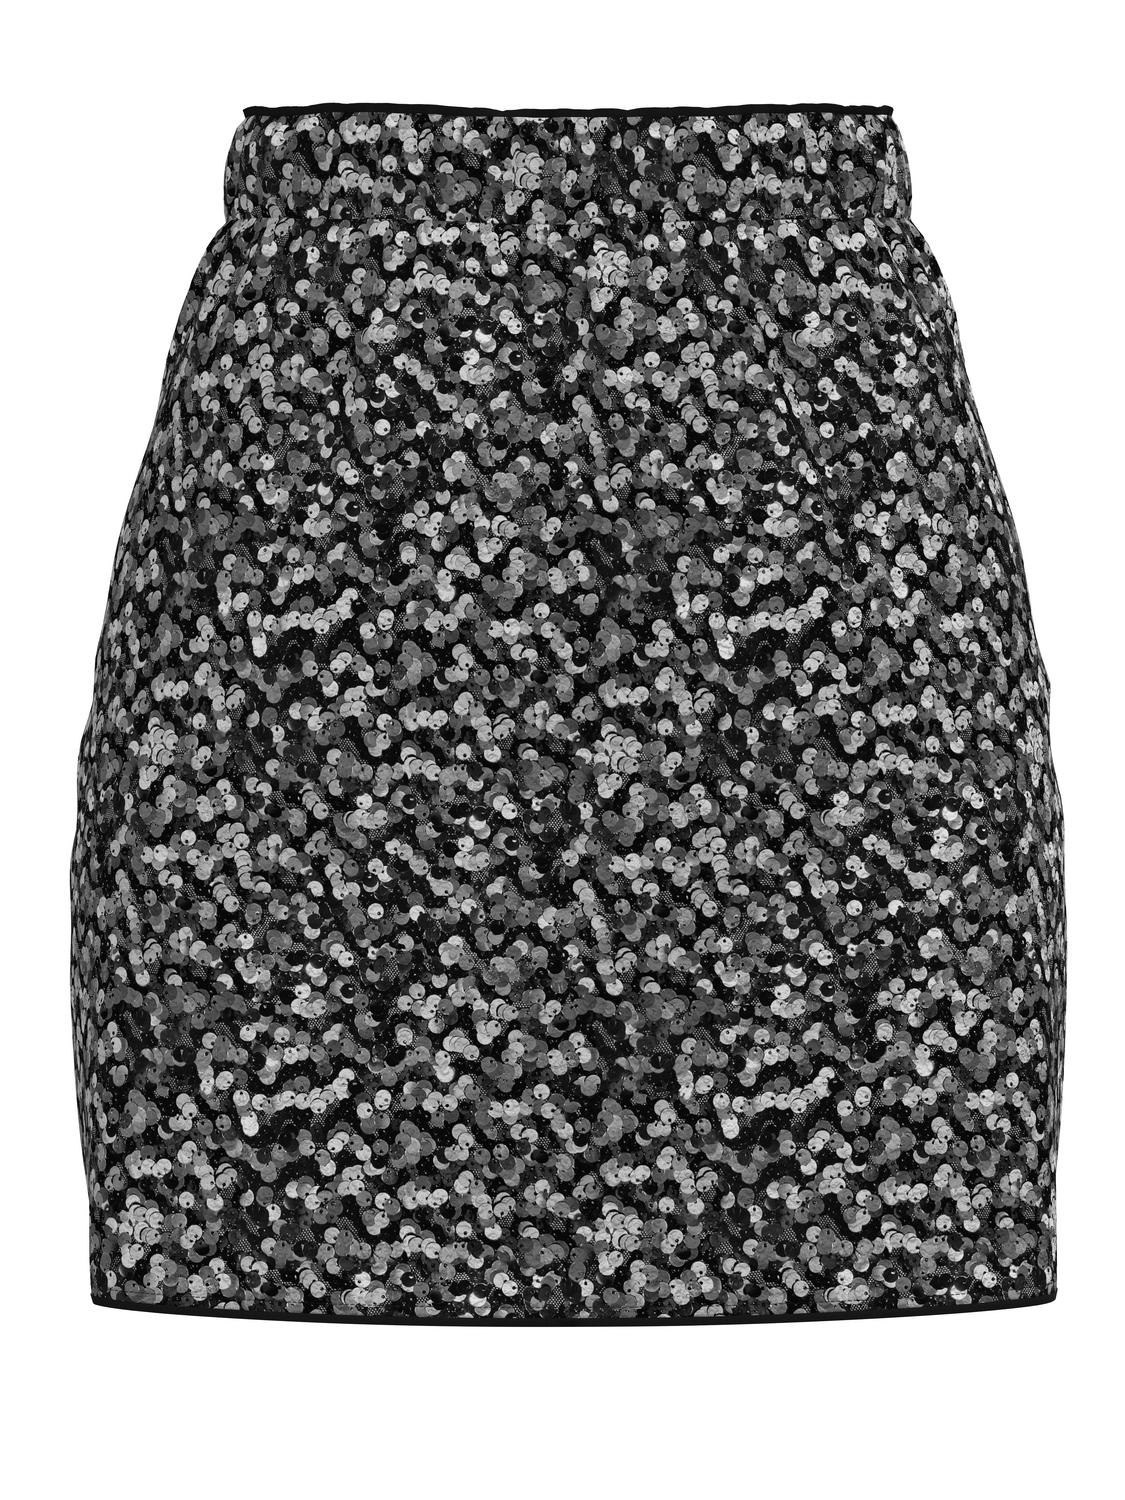 VIMANA Skirt - Black